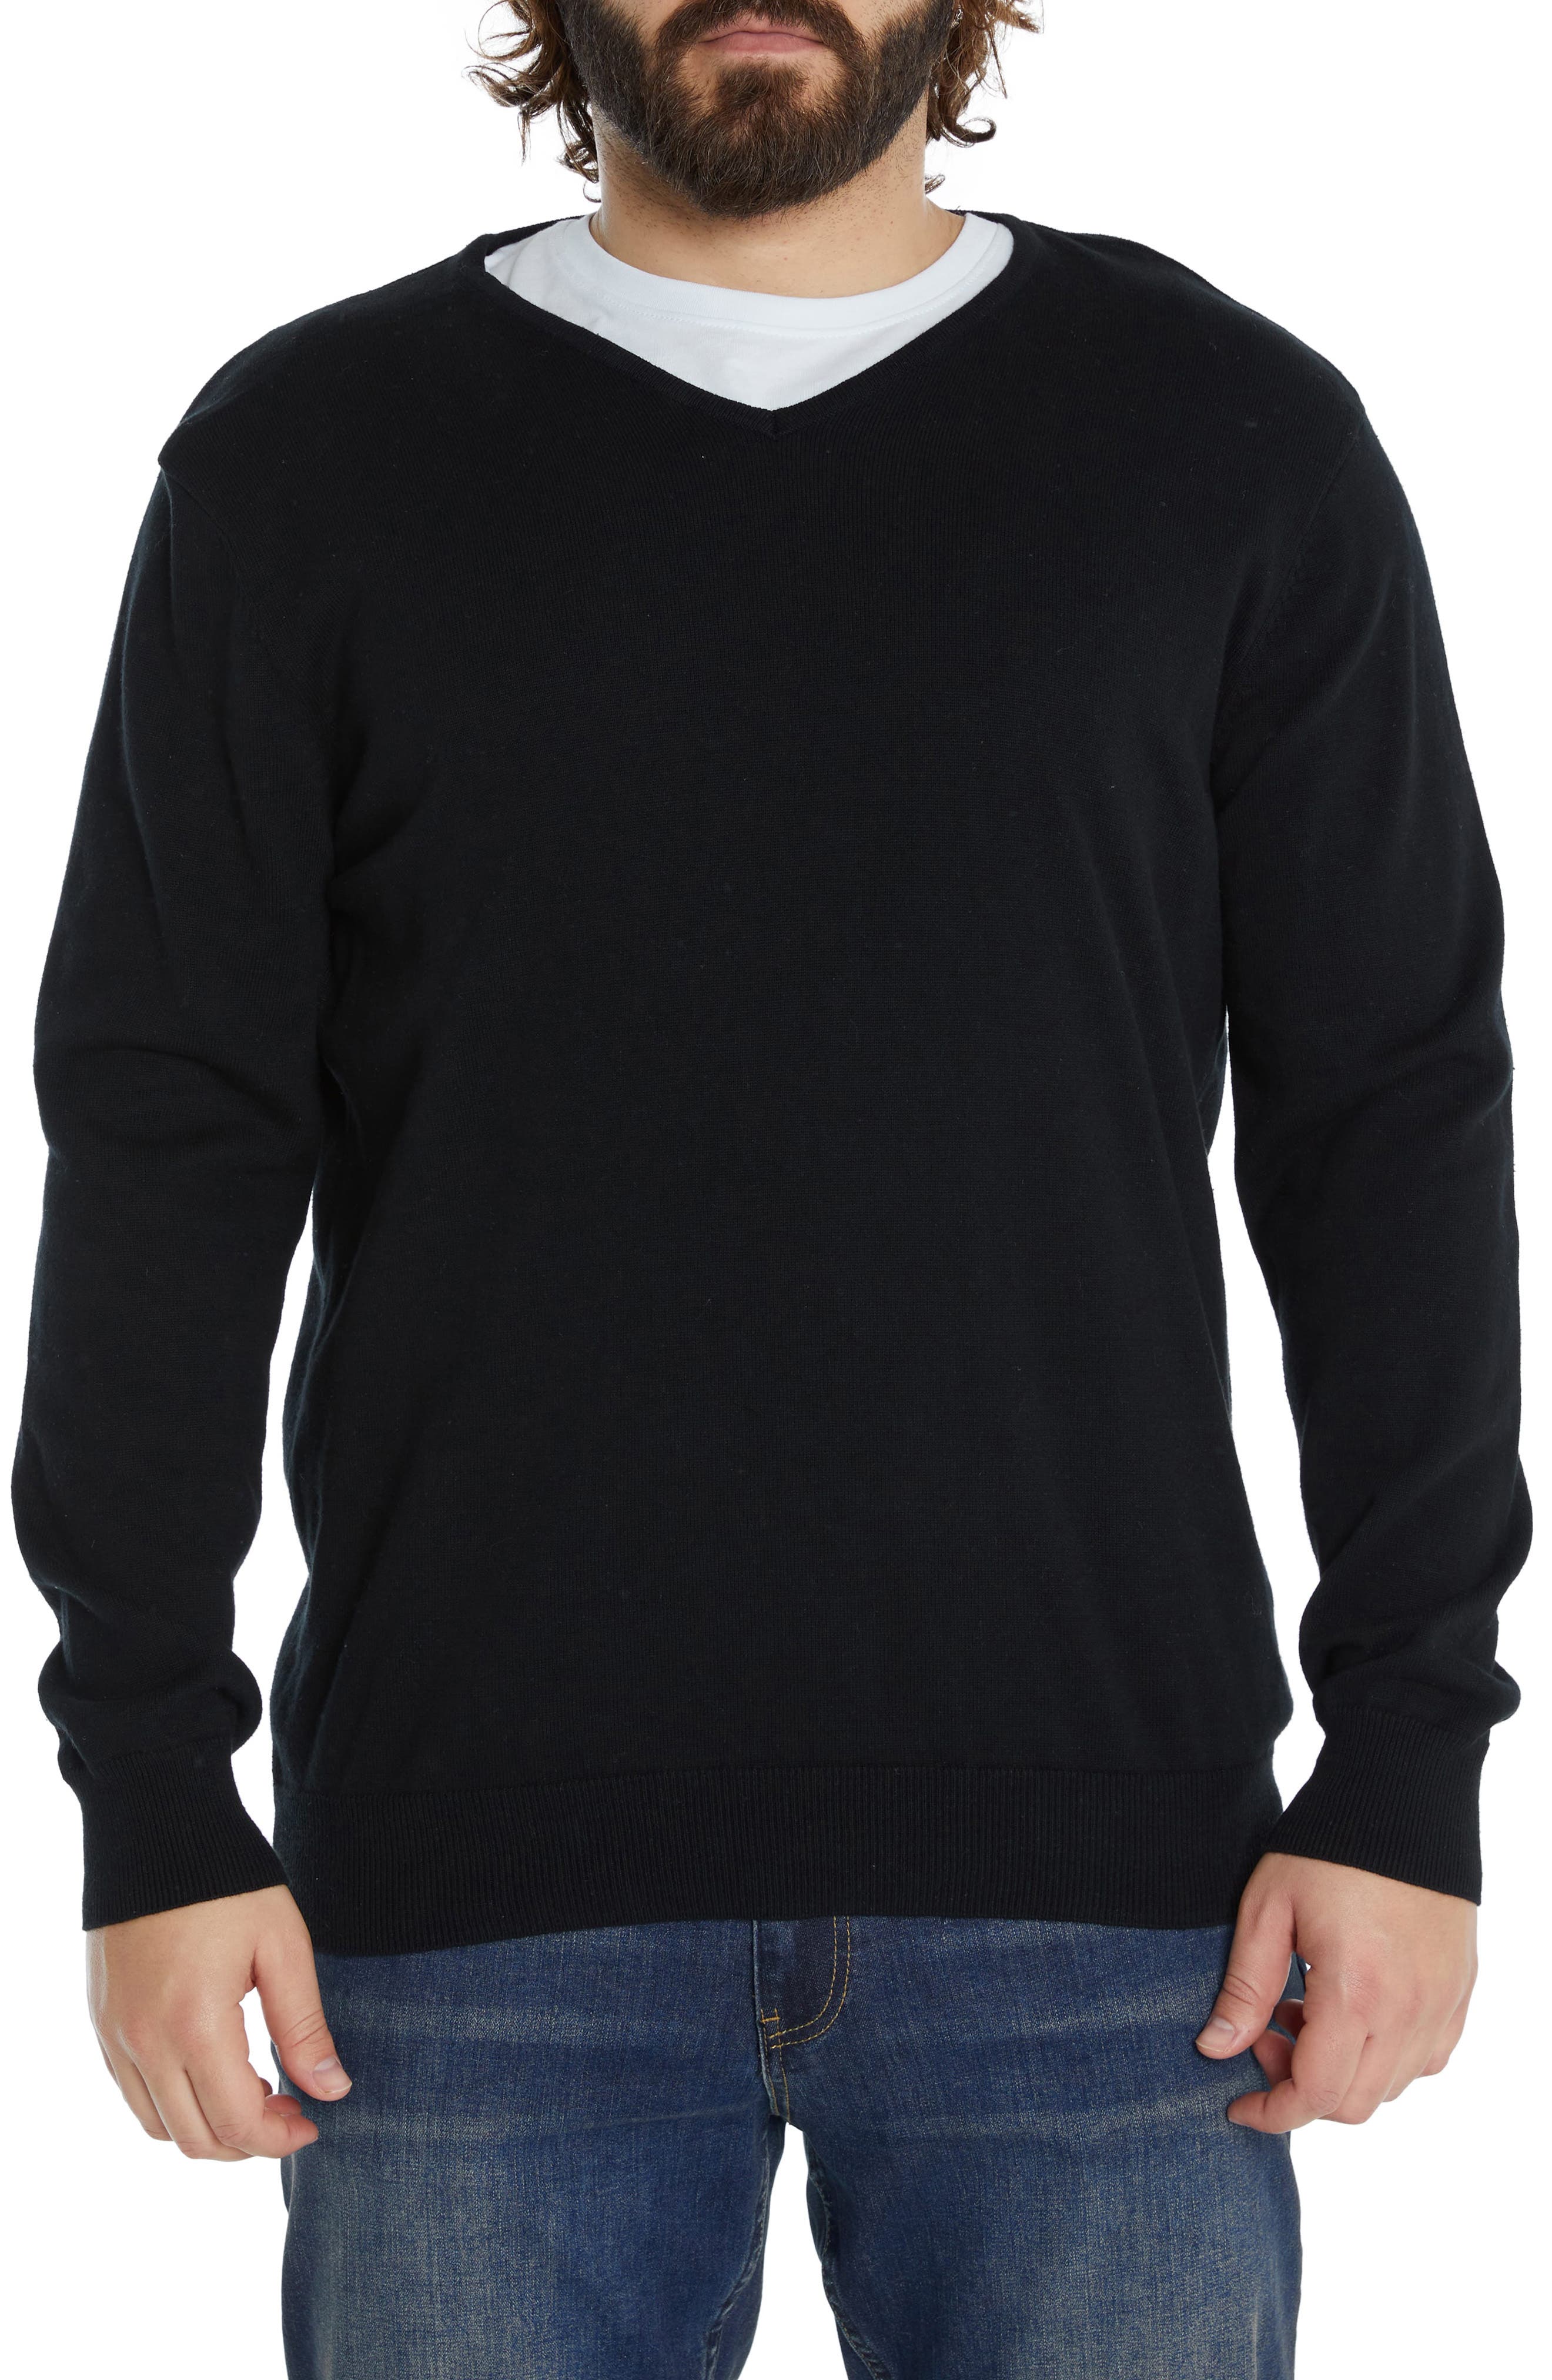 Johnny Bigg Cotton V-Neck Sweater in Black at Nordstrom